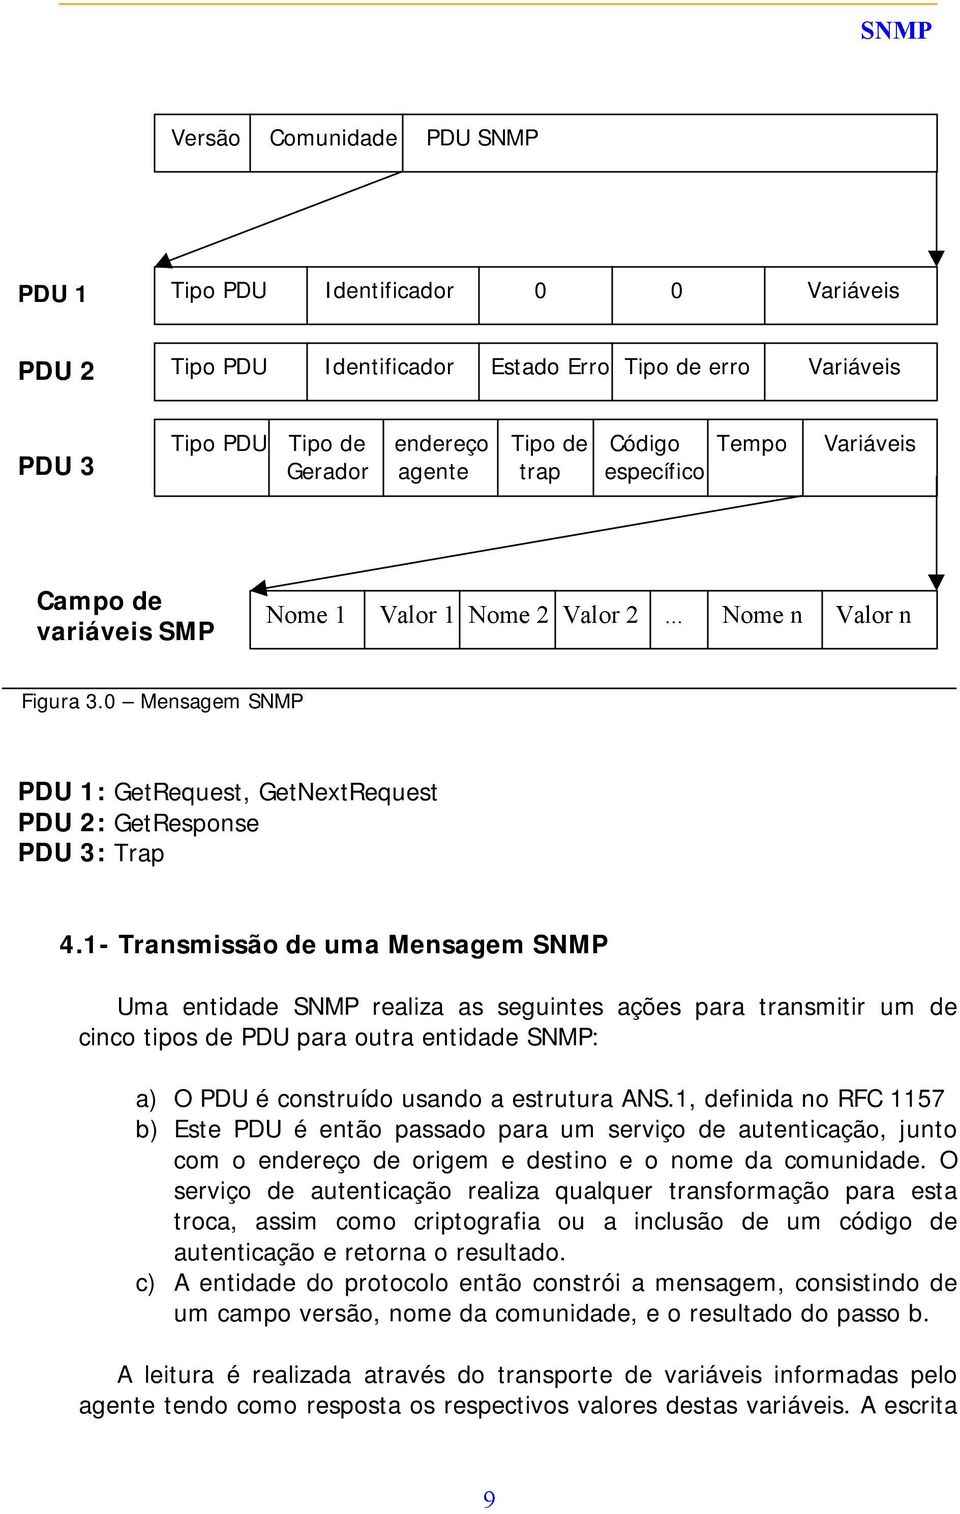 1- Transmissão de uma Mensagem SNMP Uma entidade SNMP realiza as seguintes ações para transmitir um de cinco tipos de PDU para outra entidade SNMP: a) O PDU é construído usando a estrutura ANS.